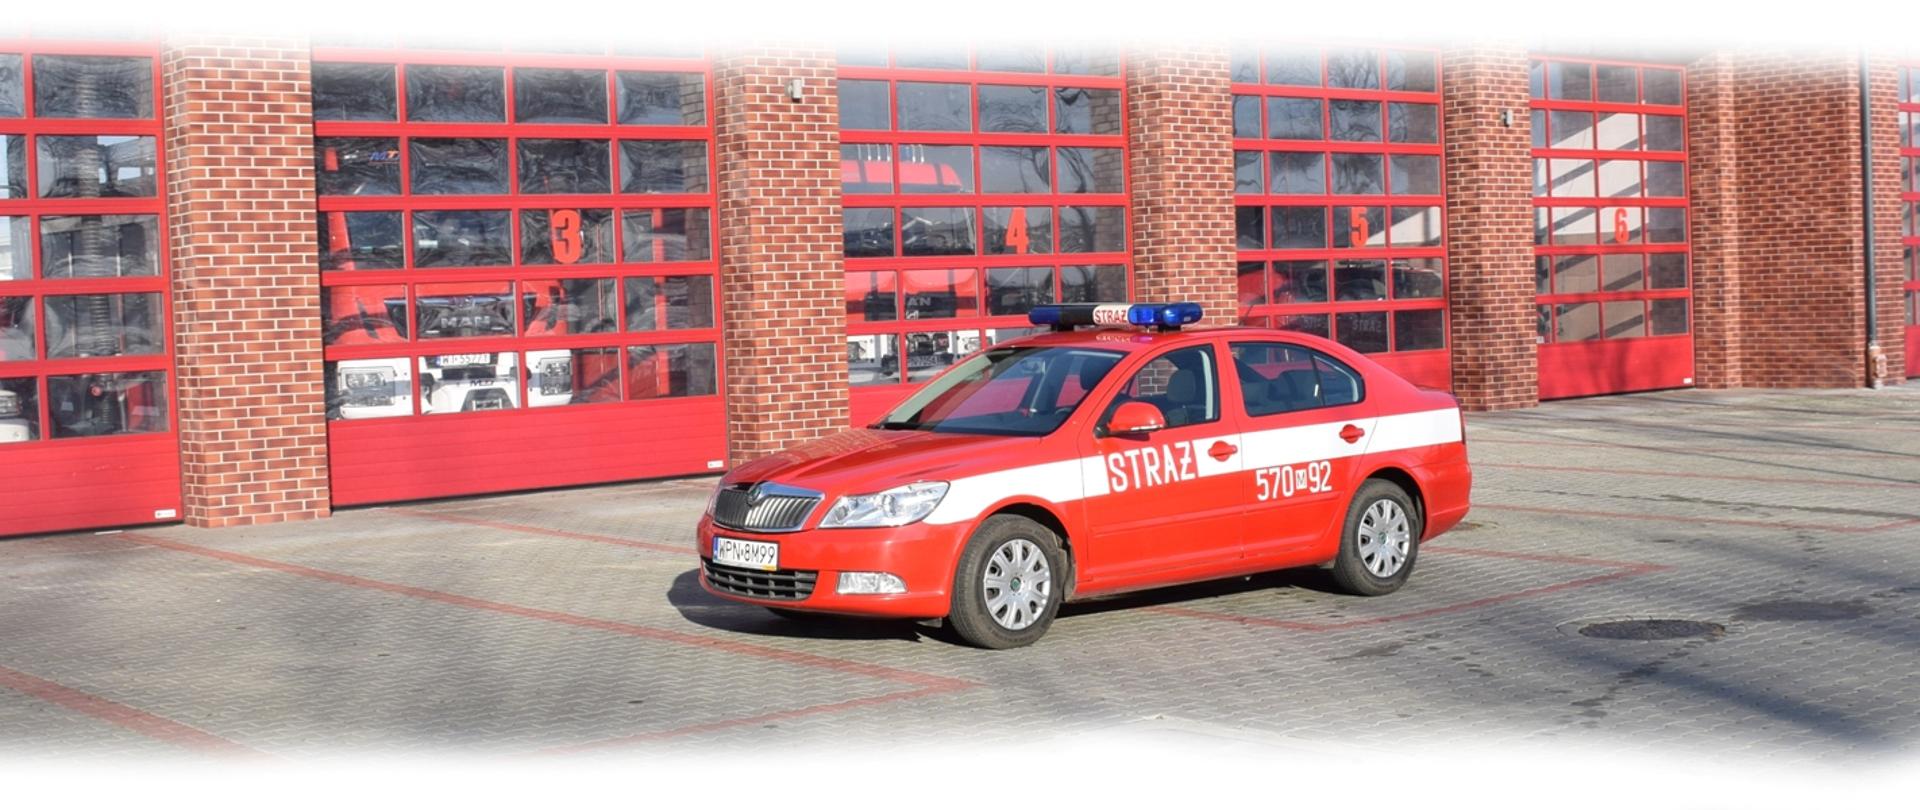 samochód pożarniczy, czerwony, operacyjny, ustawiony przed garażem, KP PSP Płońsk, 2020 r.